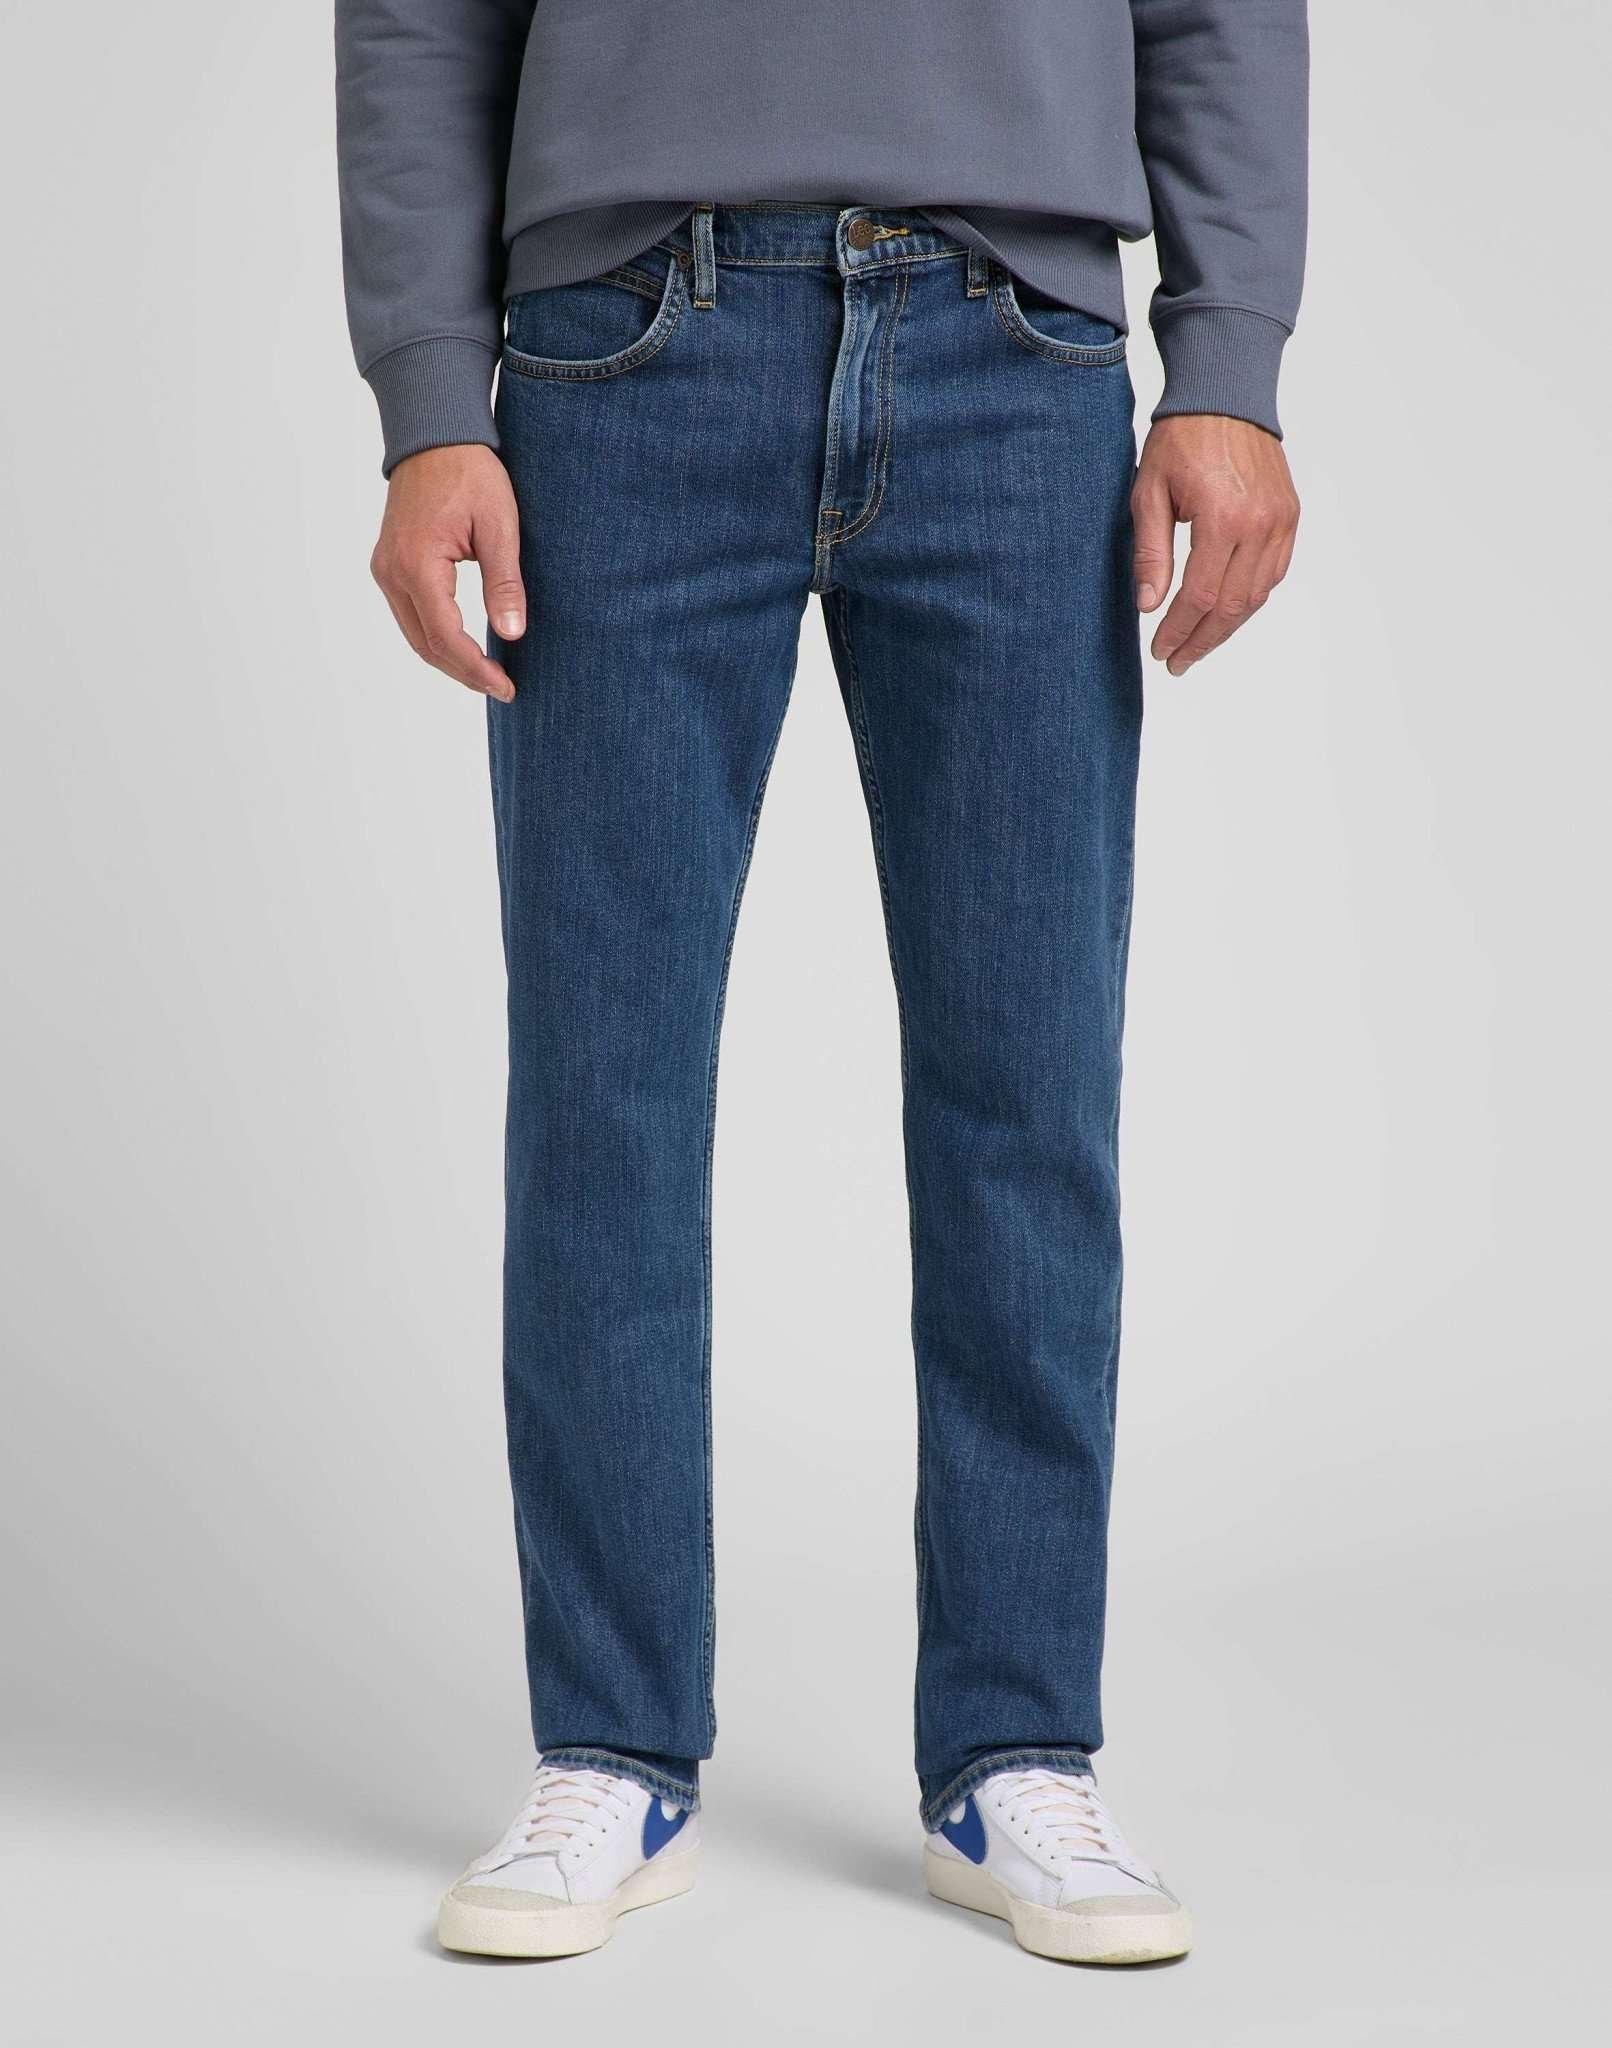 Jeans Straight Leg Brooklyn Herren Blau Denim L32/W44 von Lee